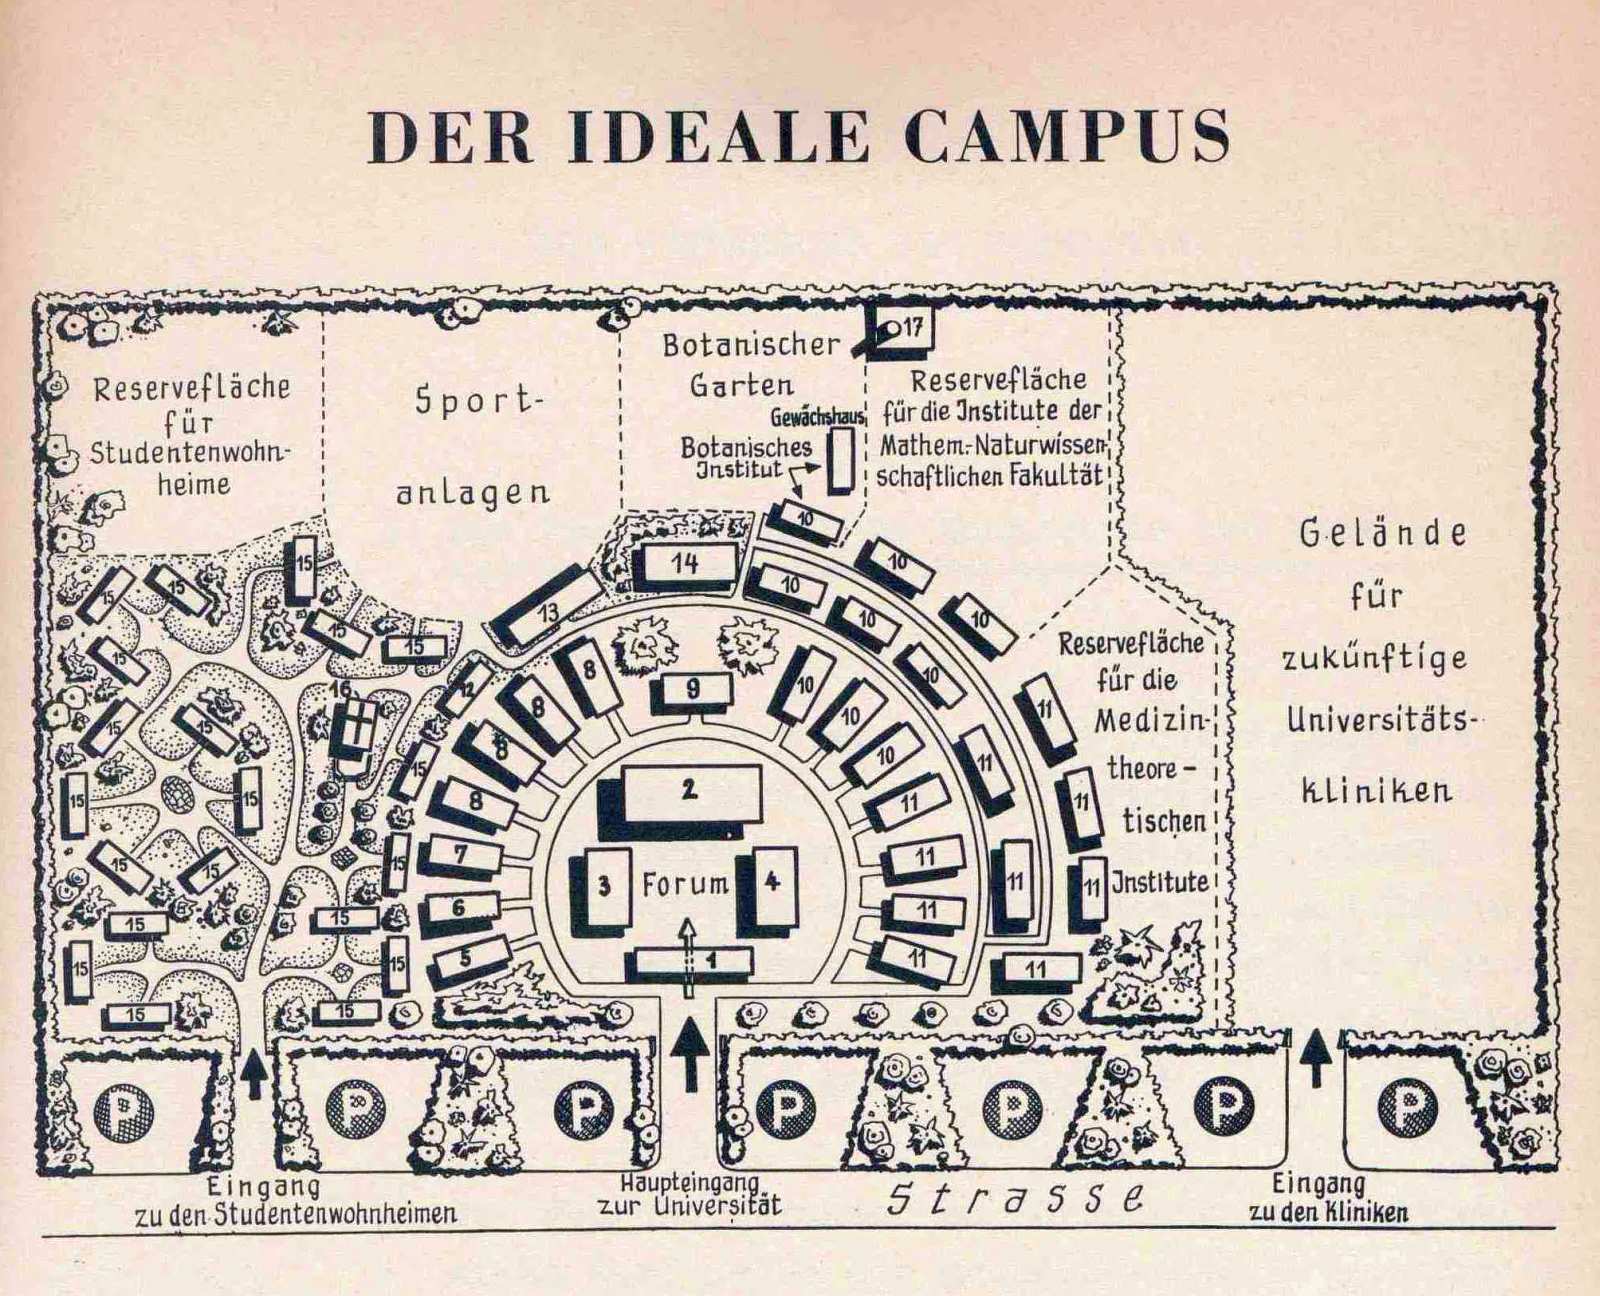 Auf der Zeichnung sind die Gebäude in einem Halbrund angeordnet. Das Zentrum bilden die Universitätsbibliothek, das Hörsaalgebäude mit dem Großem Hörsaal, das Studentenhaus mit der Mensa sowie das Gebäude für Rektorat und Verwaltung.